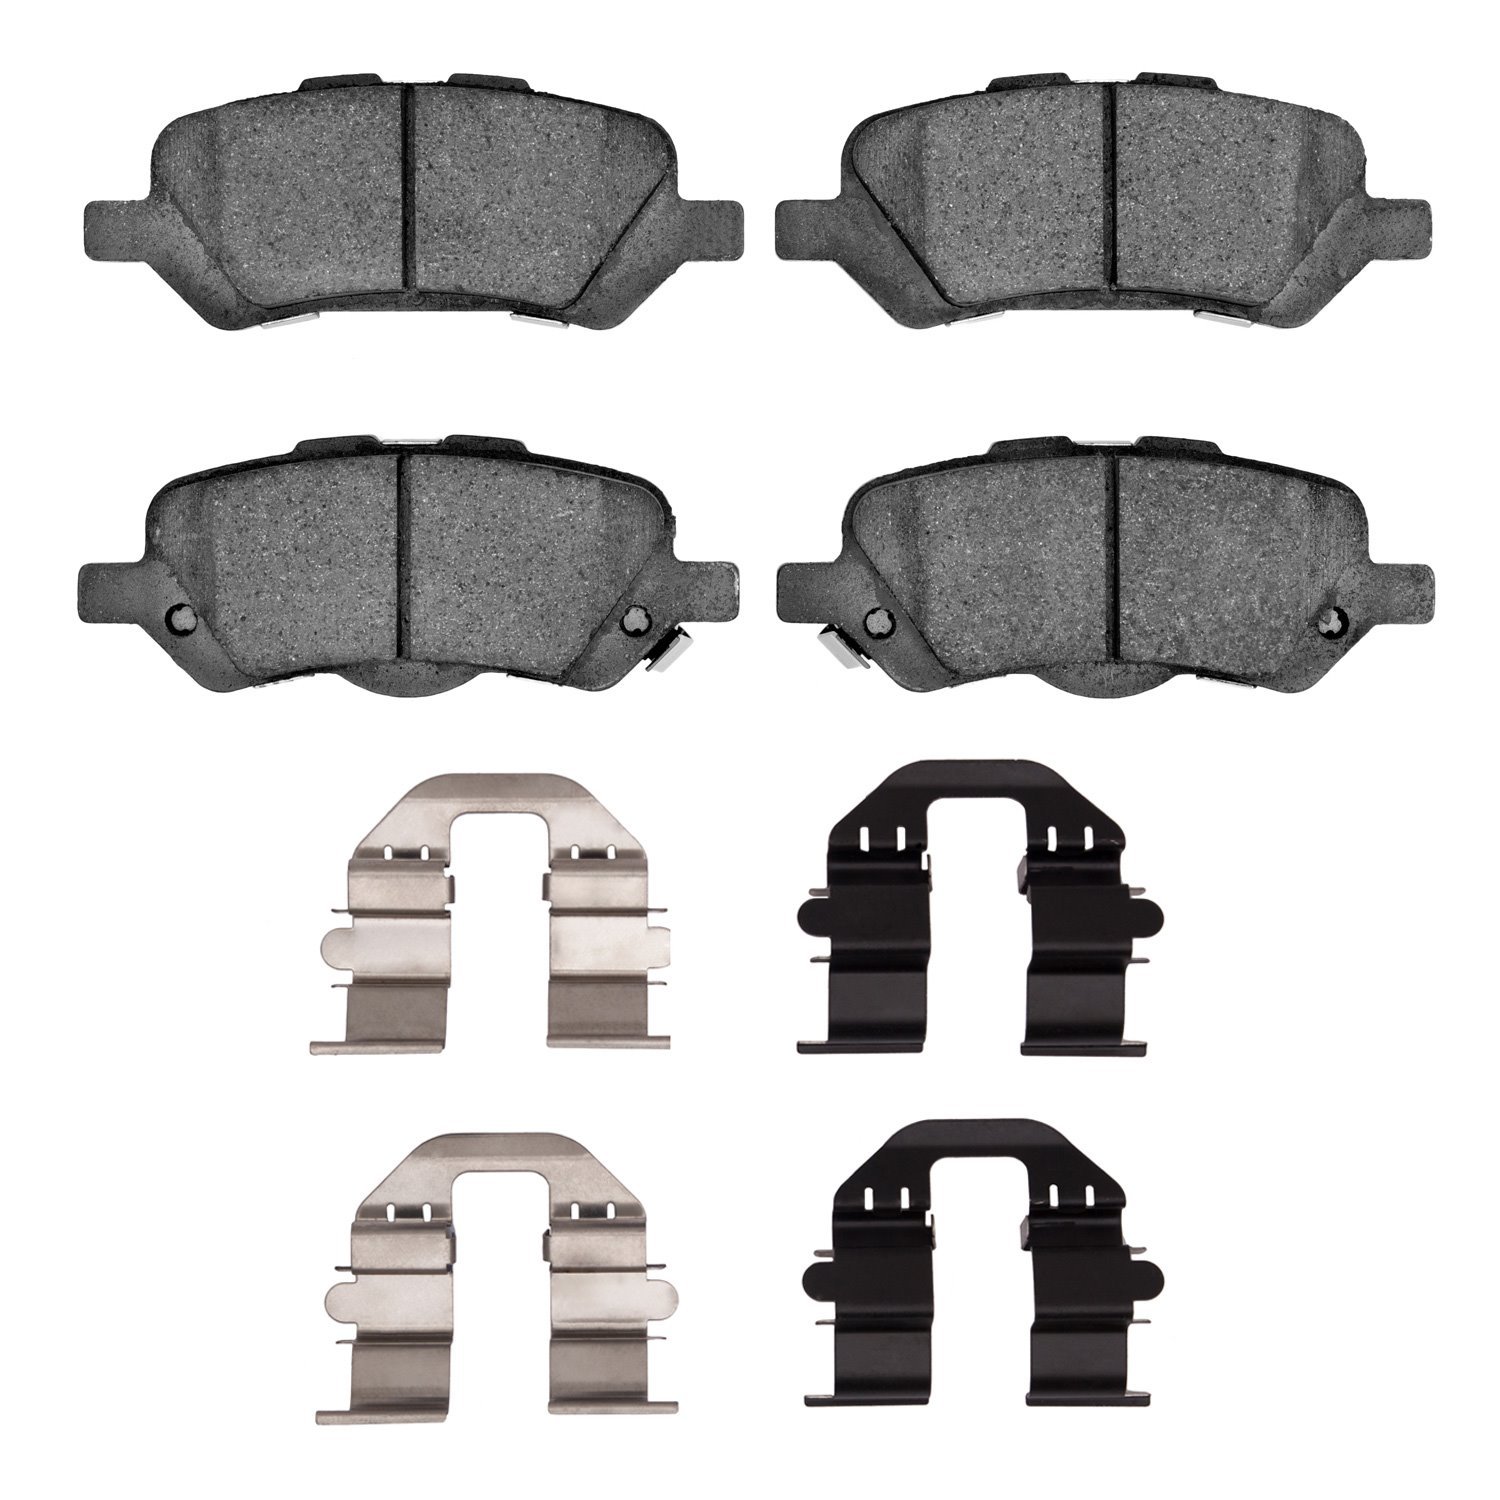 1310-1402-01 3000-Series Ceramic Brake Pads & Hardware Kit, 2009-2015 Lexus/Toyota/Scion, Position: Rear